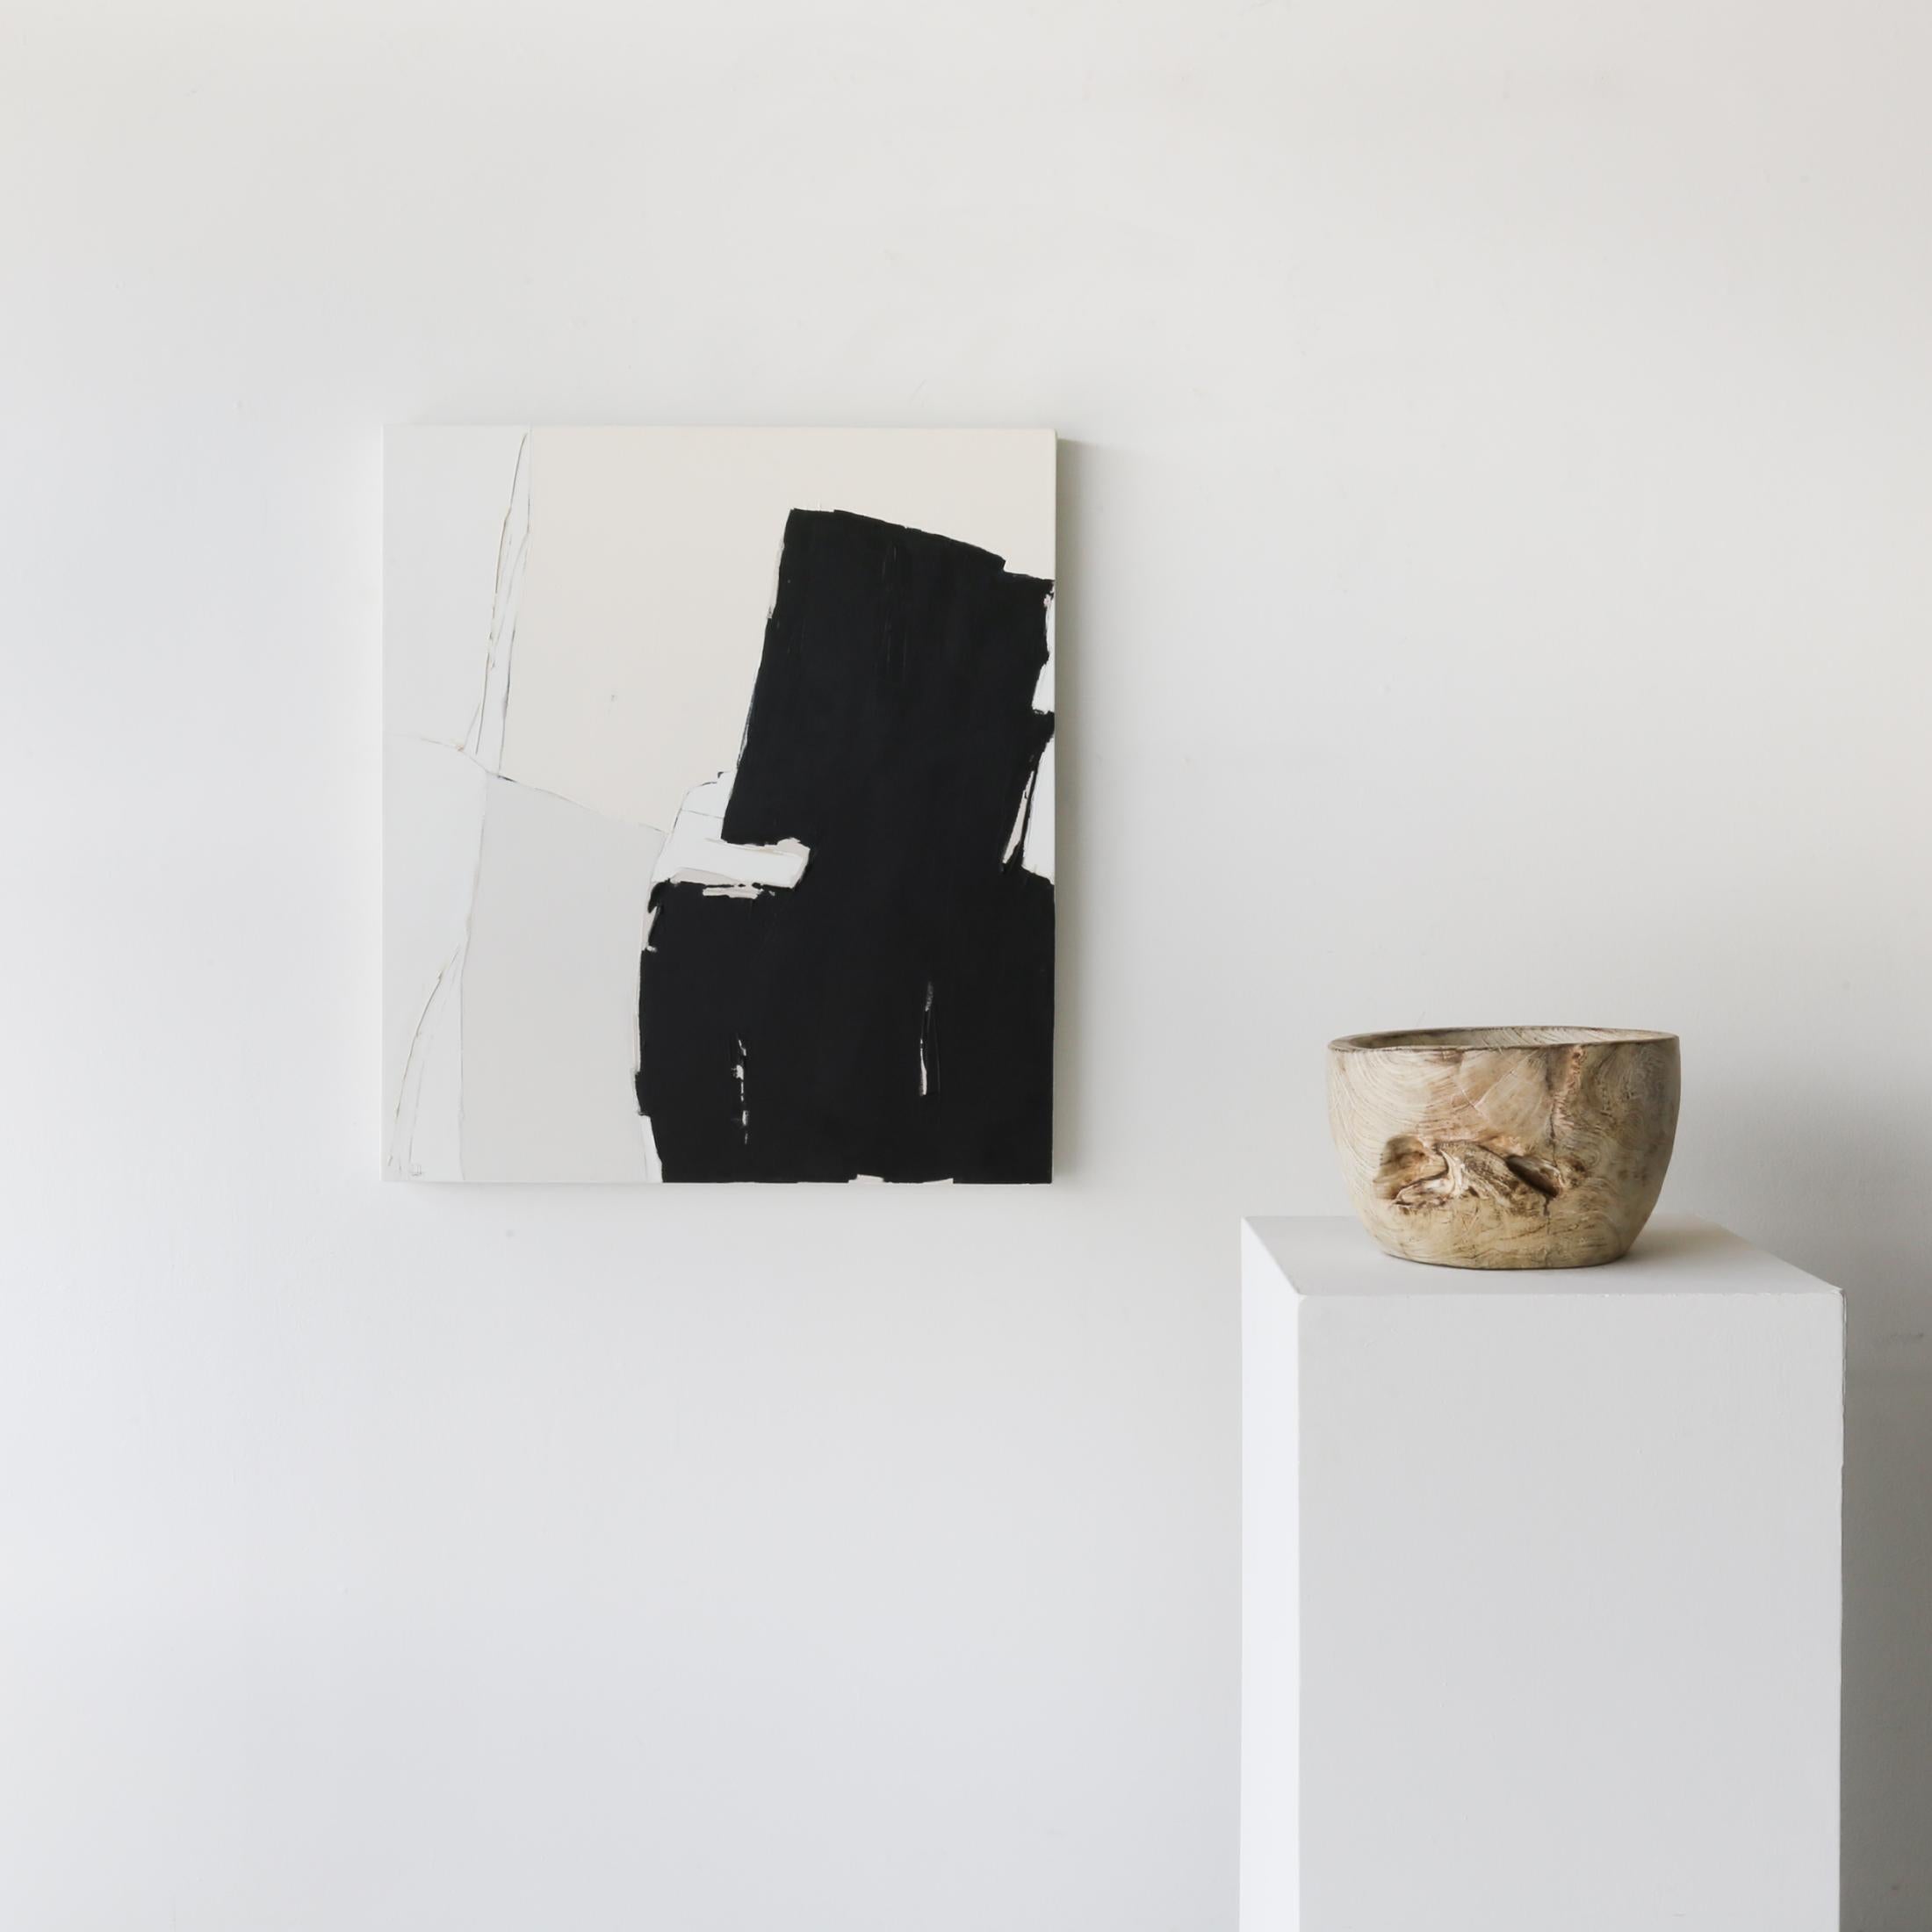 Holly Addi es una artista afincada en Salt Lake City cuyas obras siguen el legado de los artistas del expresionismo abstracto que la precedieron, como Helen Frankenthaler y Clyfford Still, que adoptan de forma similar el poder del espacio negativo